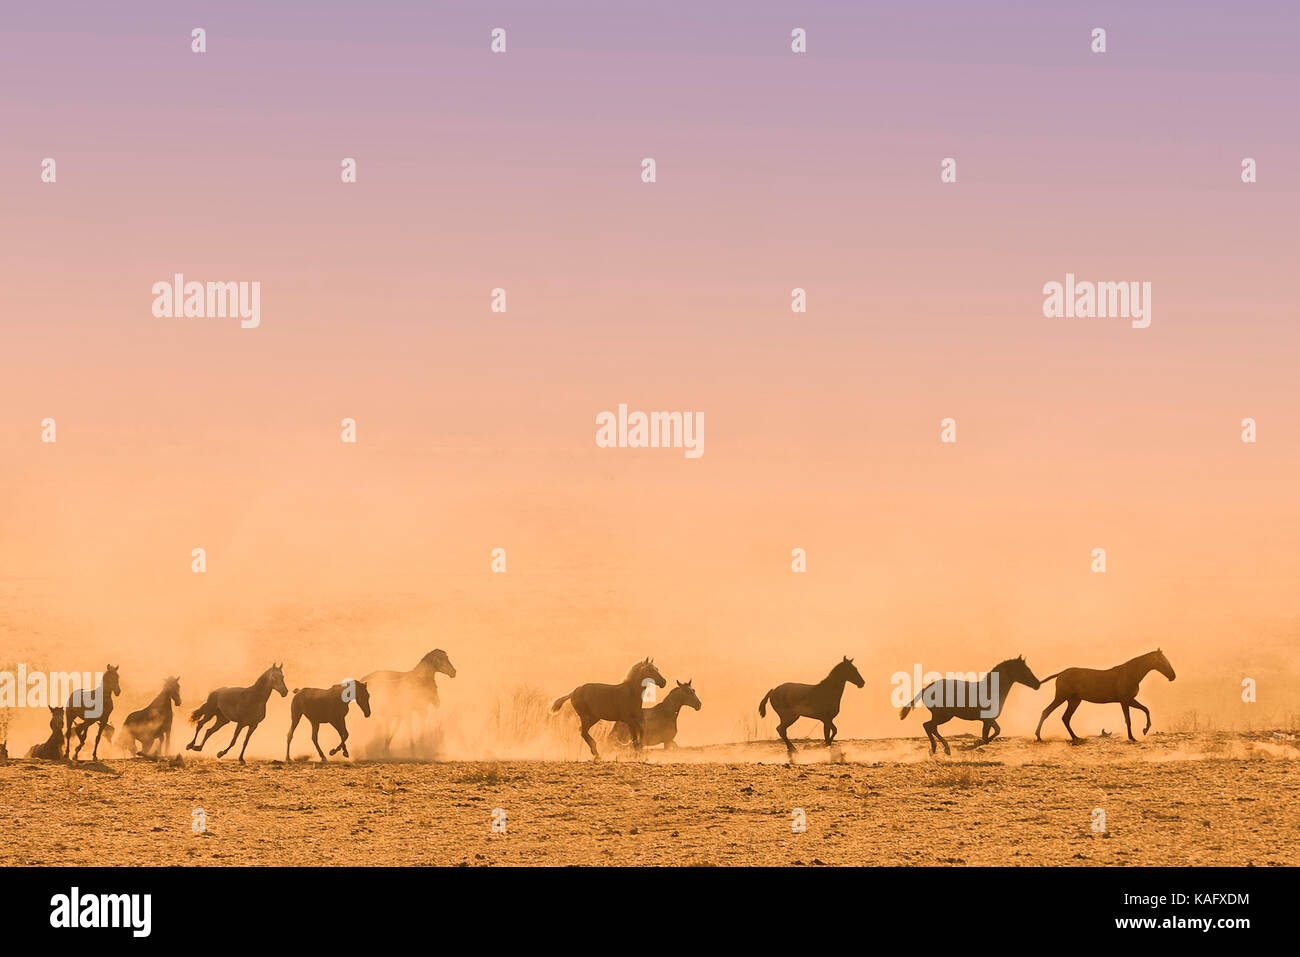 Reine Spanische Pferd, Andalusische. Herde von Jugendlichen Stuten gallopieren auf staubigen Boden, gegen den Abendhimmel. Spanien Stockfoto